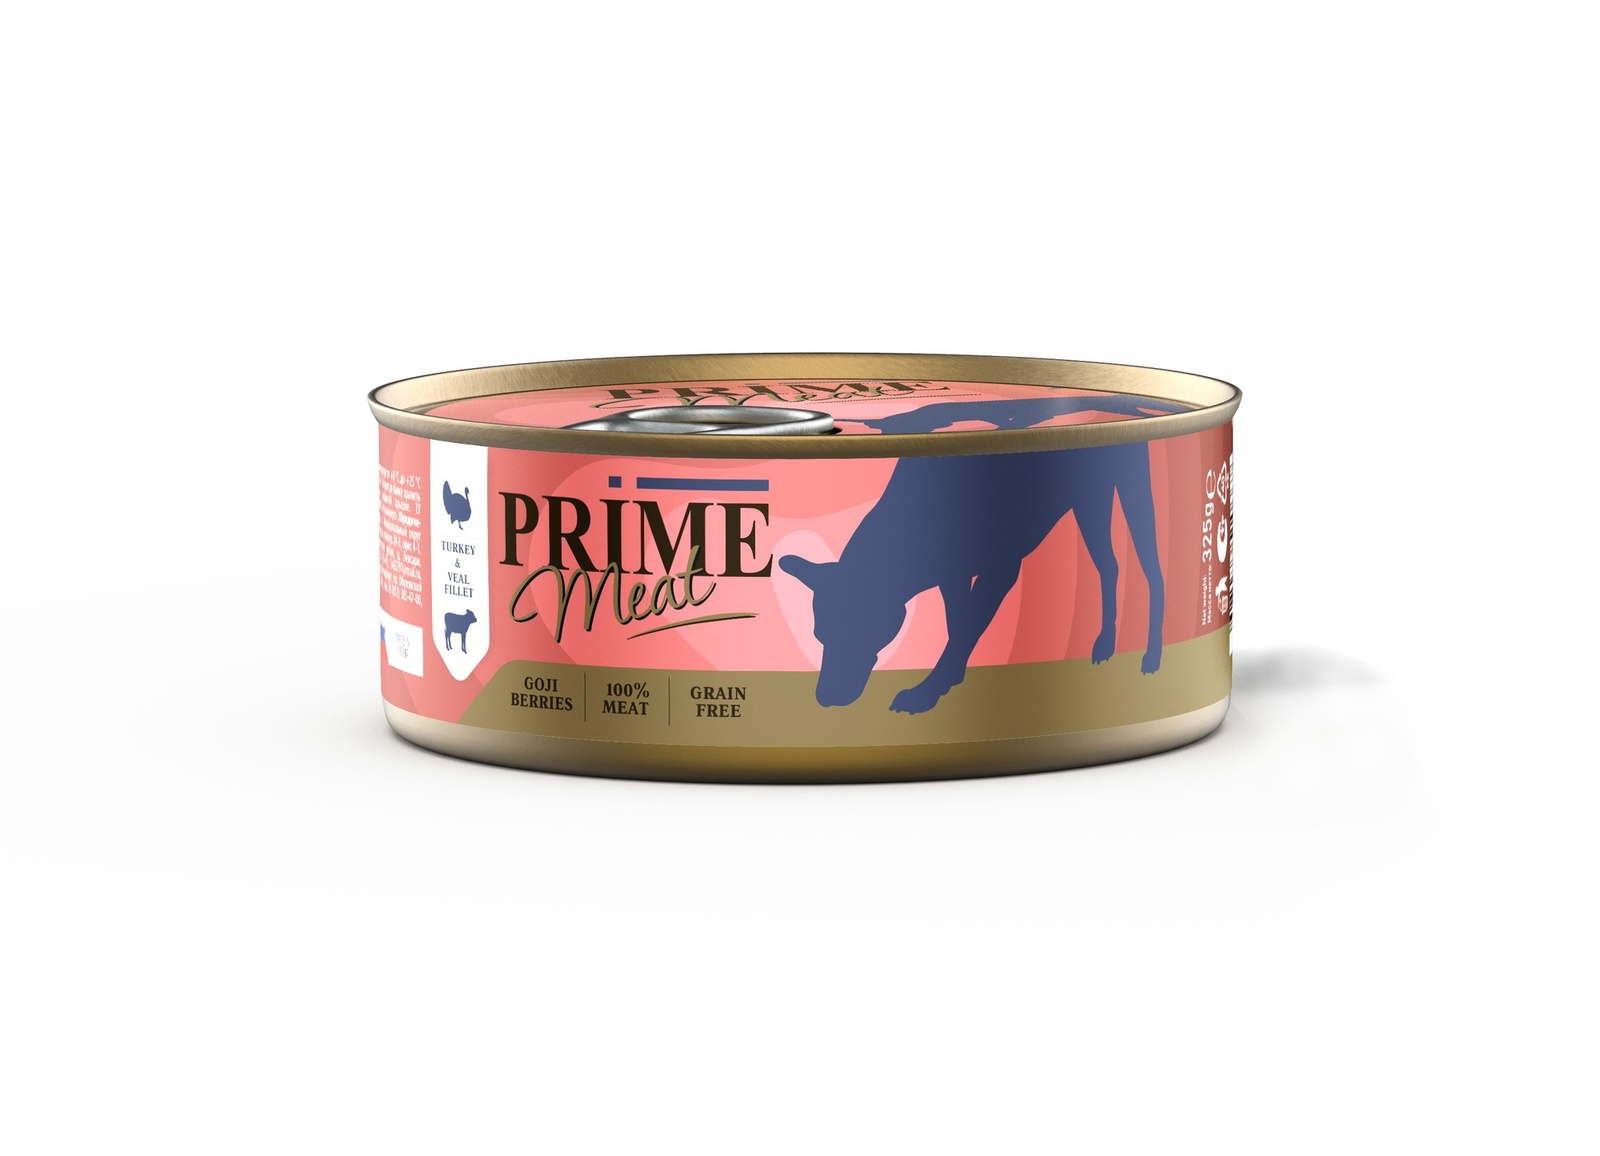 Prime консервы для собак индейка с телятиной, филе в желе (325 г) Prime консервы для собак индейка с телятиной, филе в желе (325 г) - фото 1